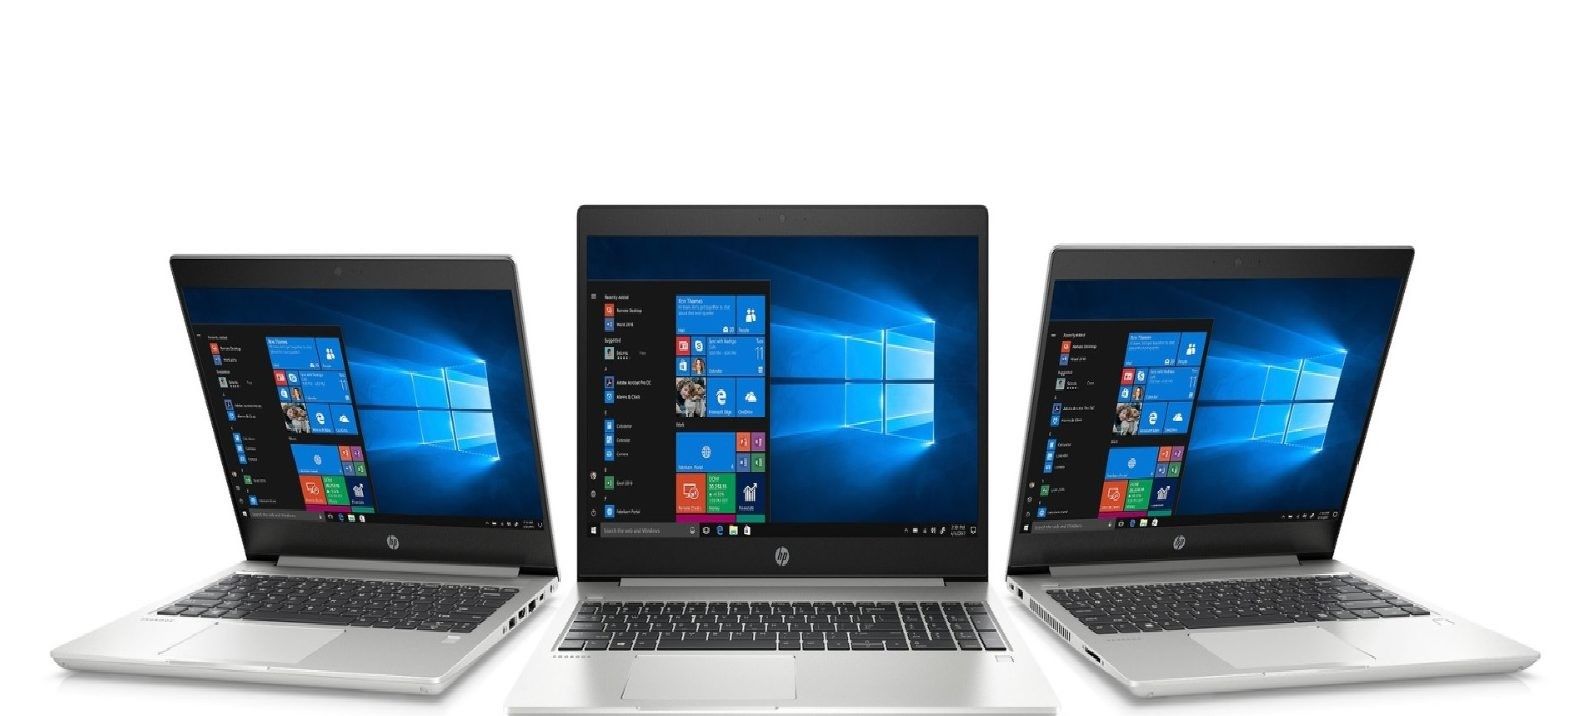 סקירת מחשב נייד HP ProBook 430, 440, 450 G6: בחירה מצוינת עבור אנשי מקצוע